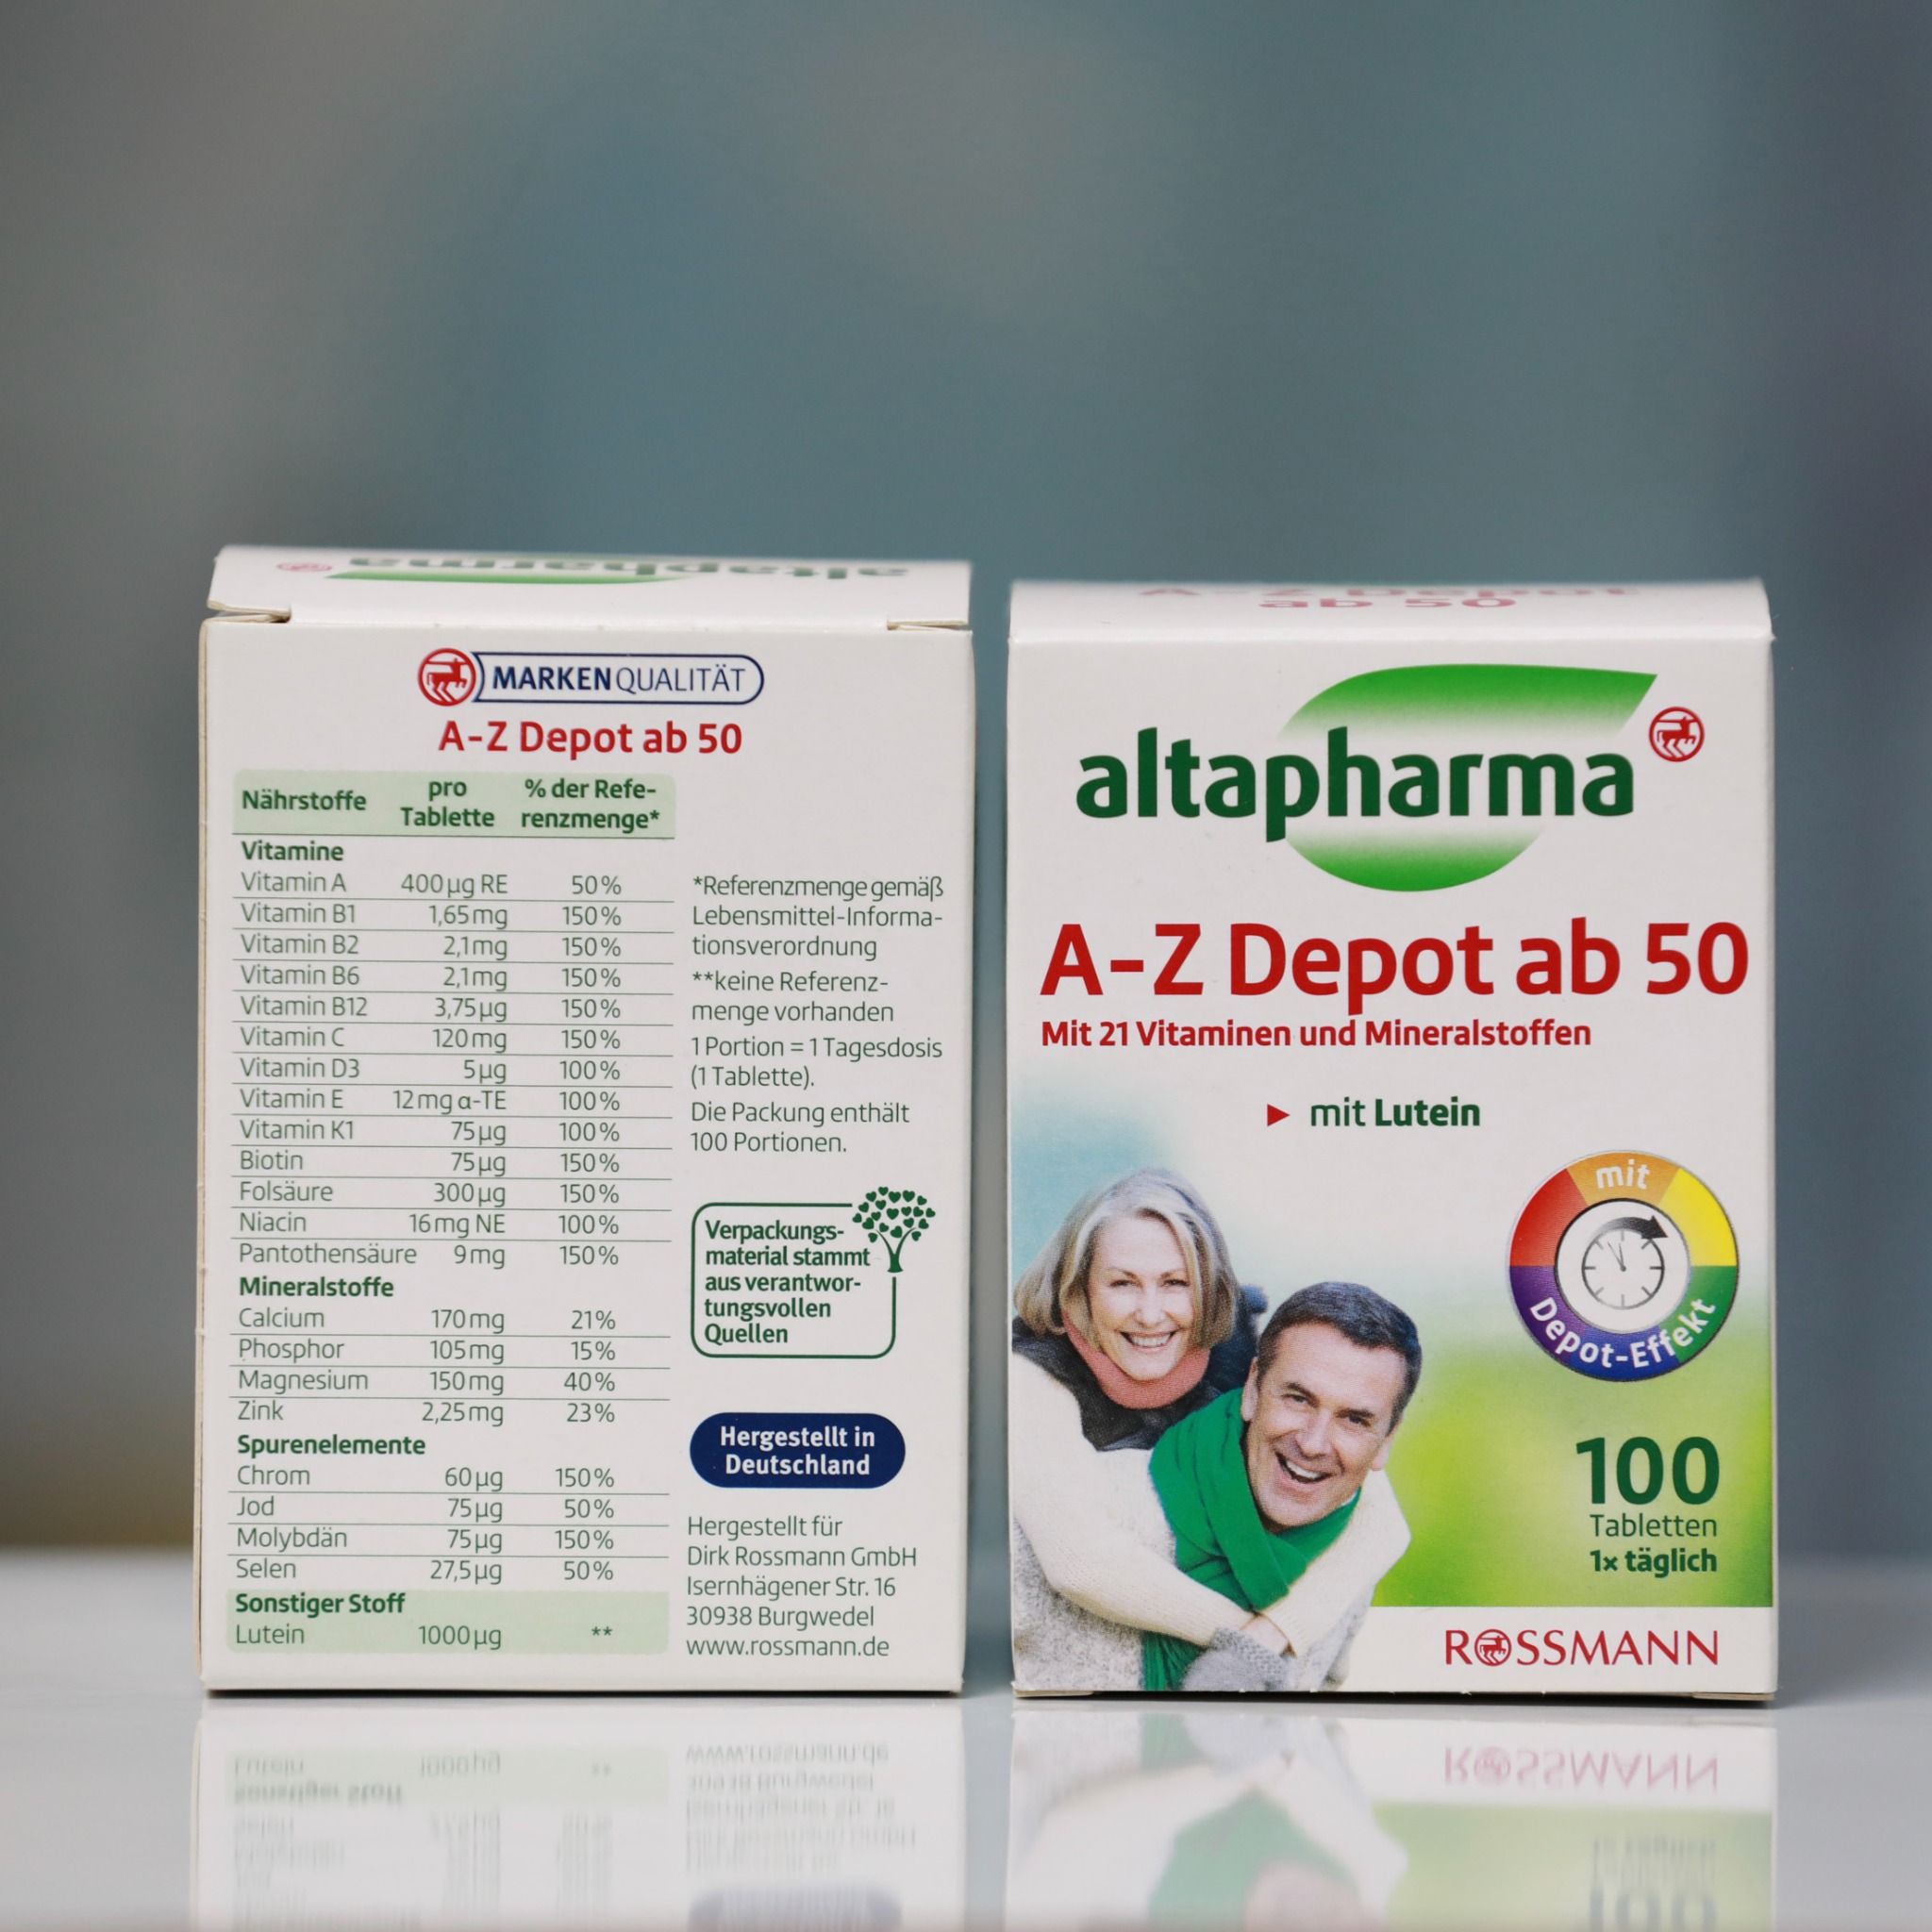  Vitamin tổng hợp A-Z trên 50 của altaphama, hộp 100 viên 